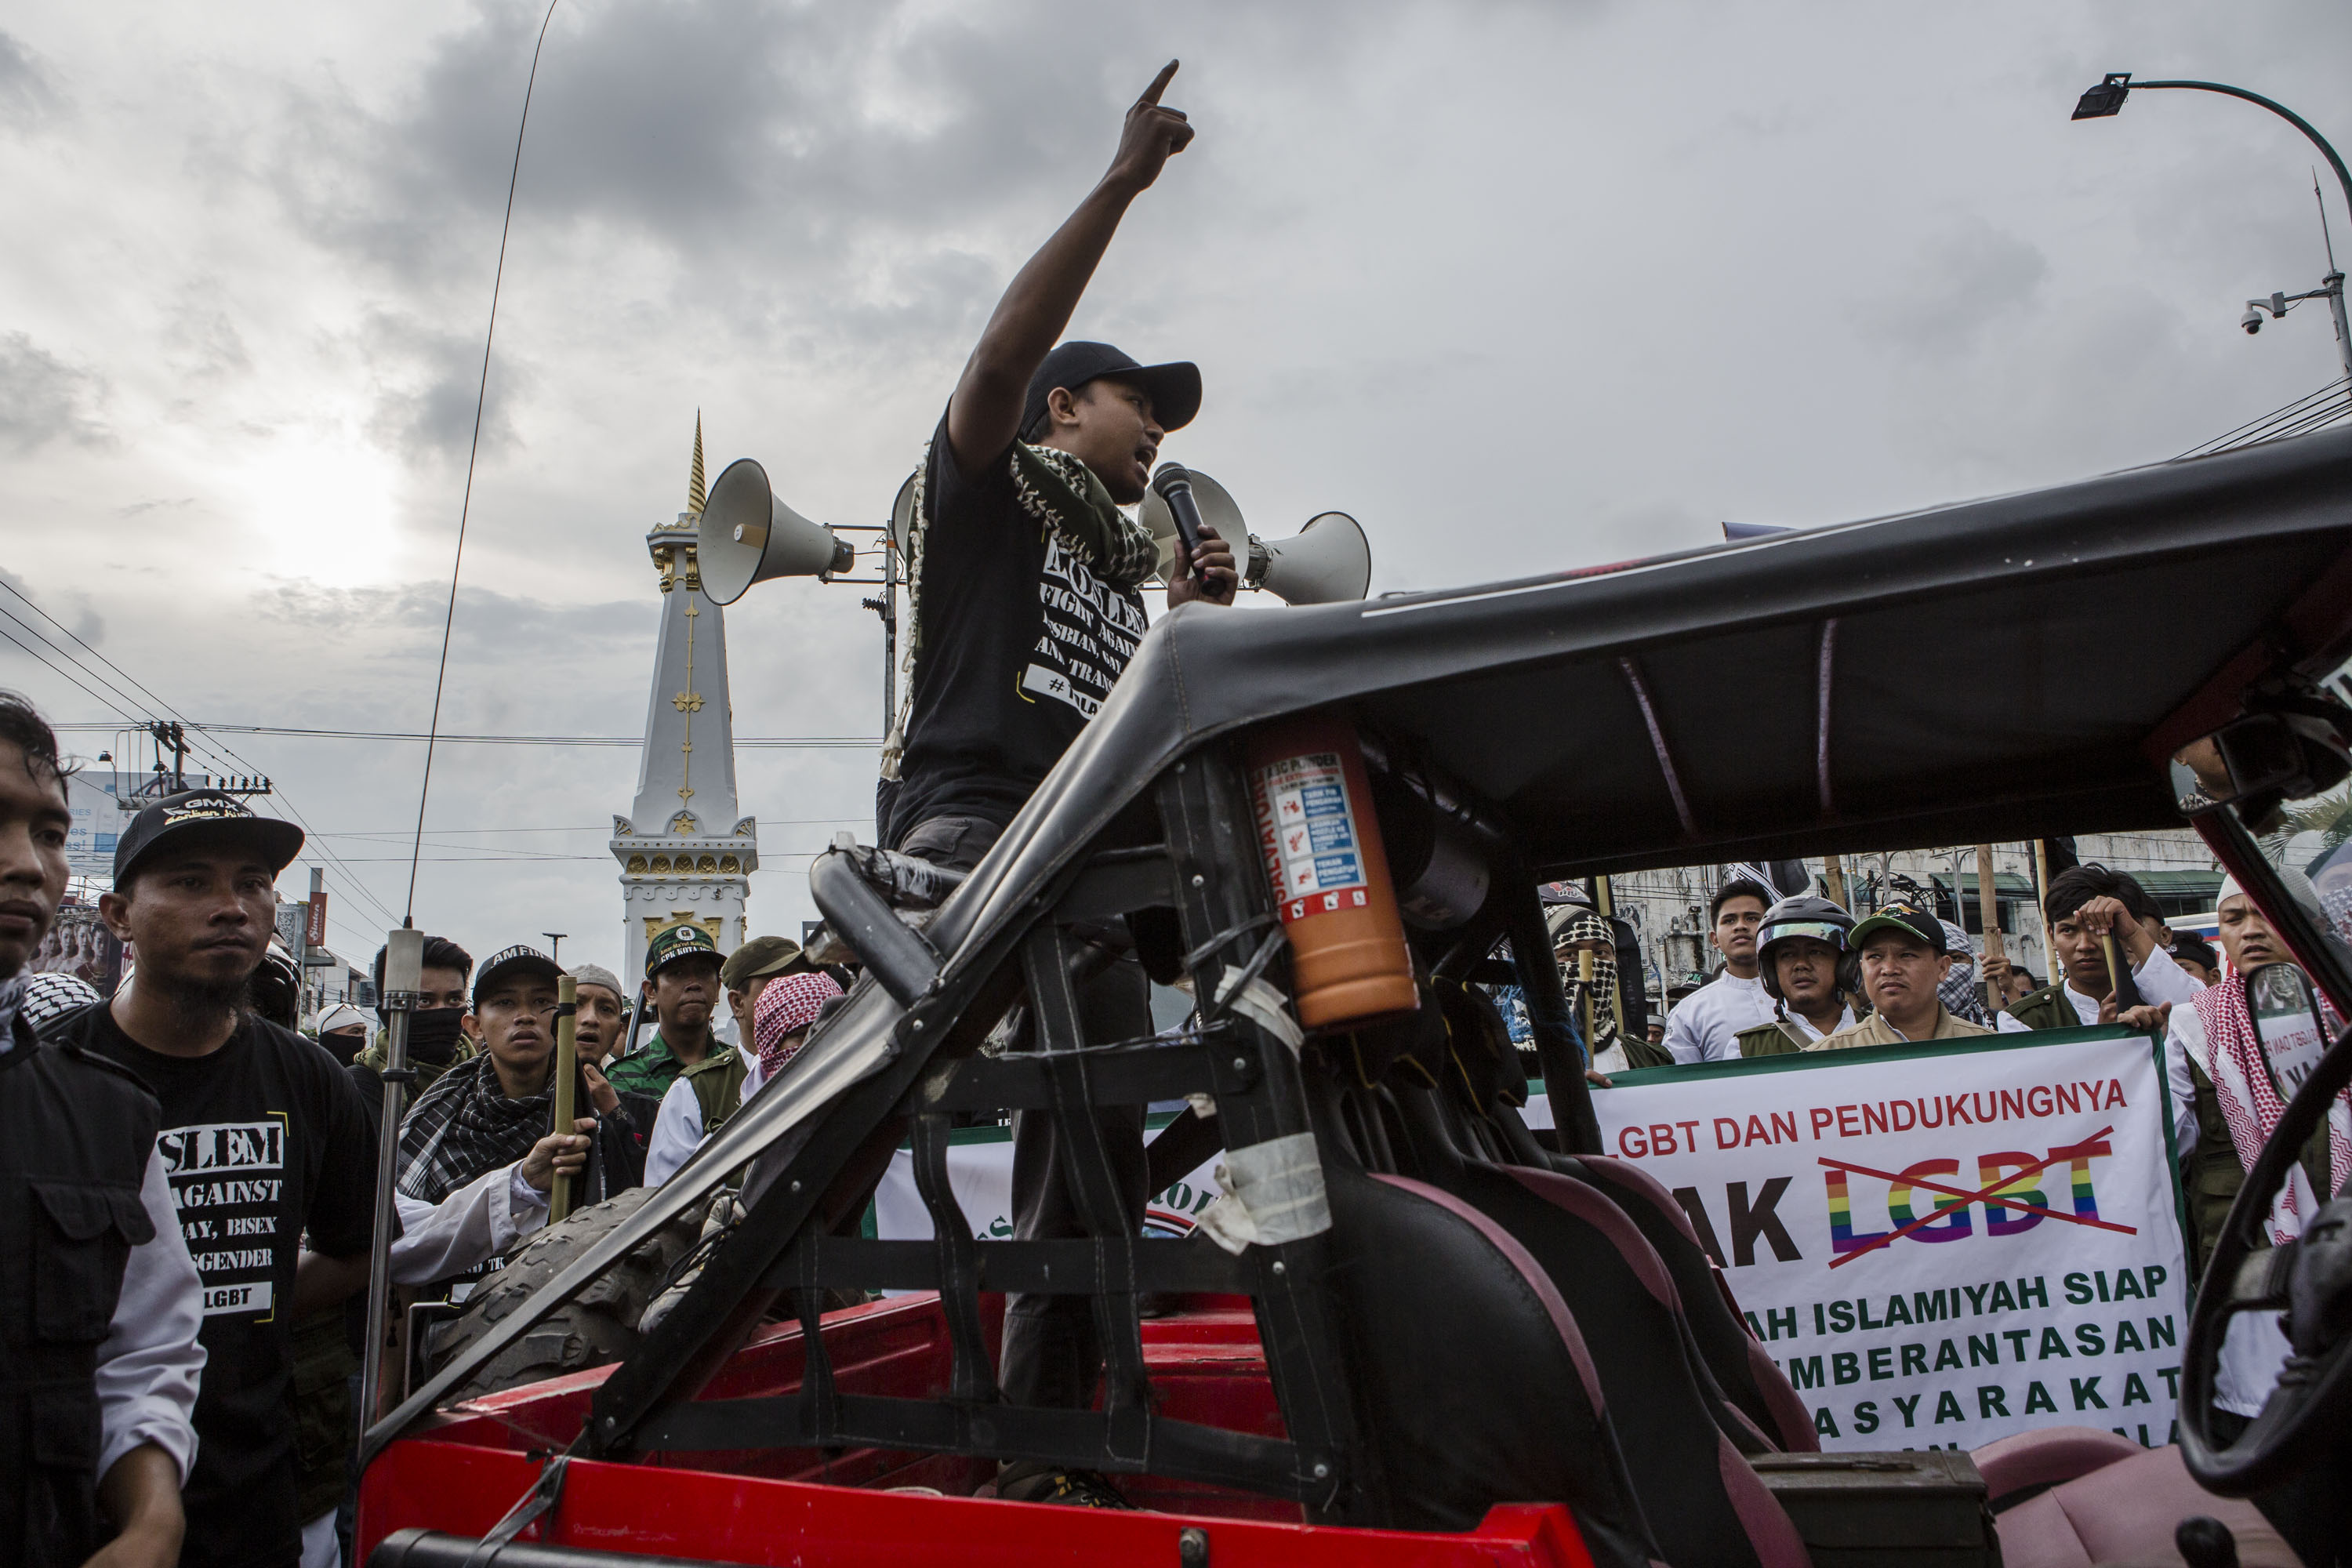 Aktivis anti-LGBT demonstrasi di Yogyakarta, Indonesia, pada tanggal 23 Februari 2016 (Ulet Ifansasti—Getty Images)